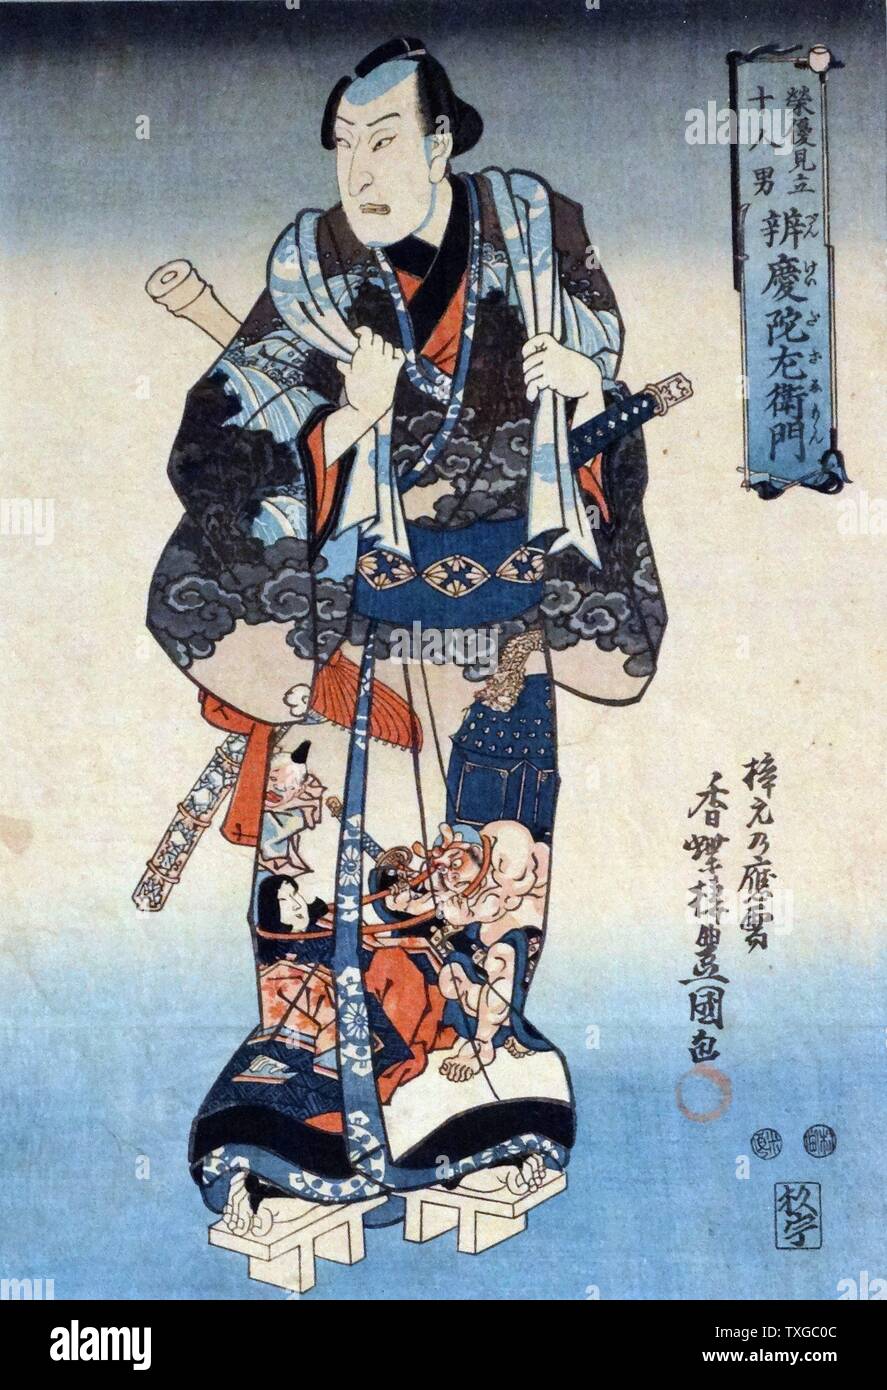 Benkei Dazaemon von Utagawa Kunisada (1786-1865) japanische Designer der Ukiyo-e Woodblock Drucke. Datierte 1820 Stockfoto